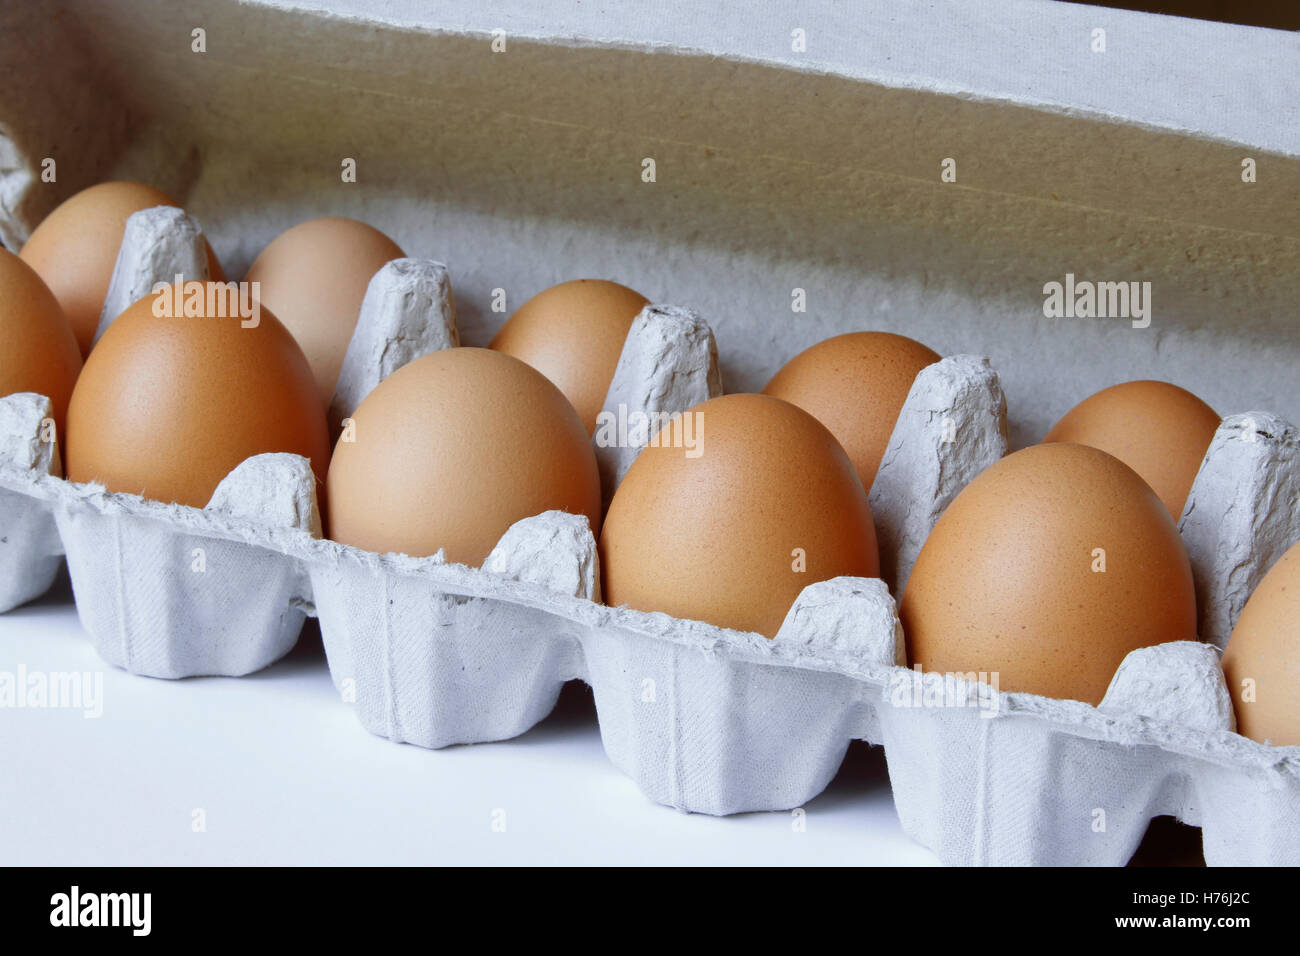 Closeup of eggs in carton Stock Photo